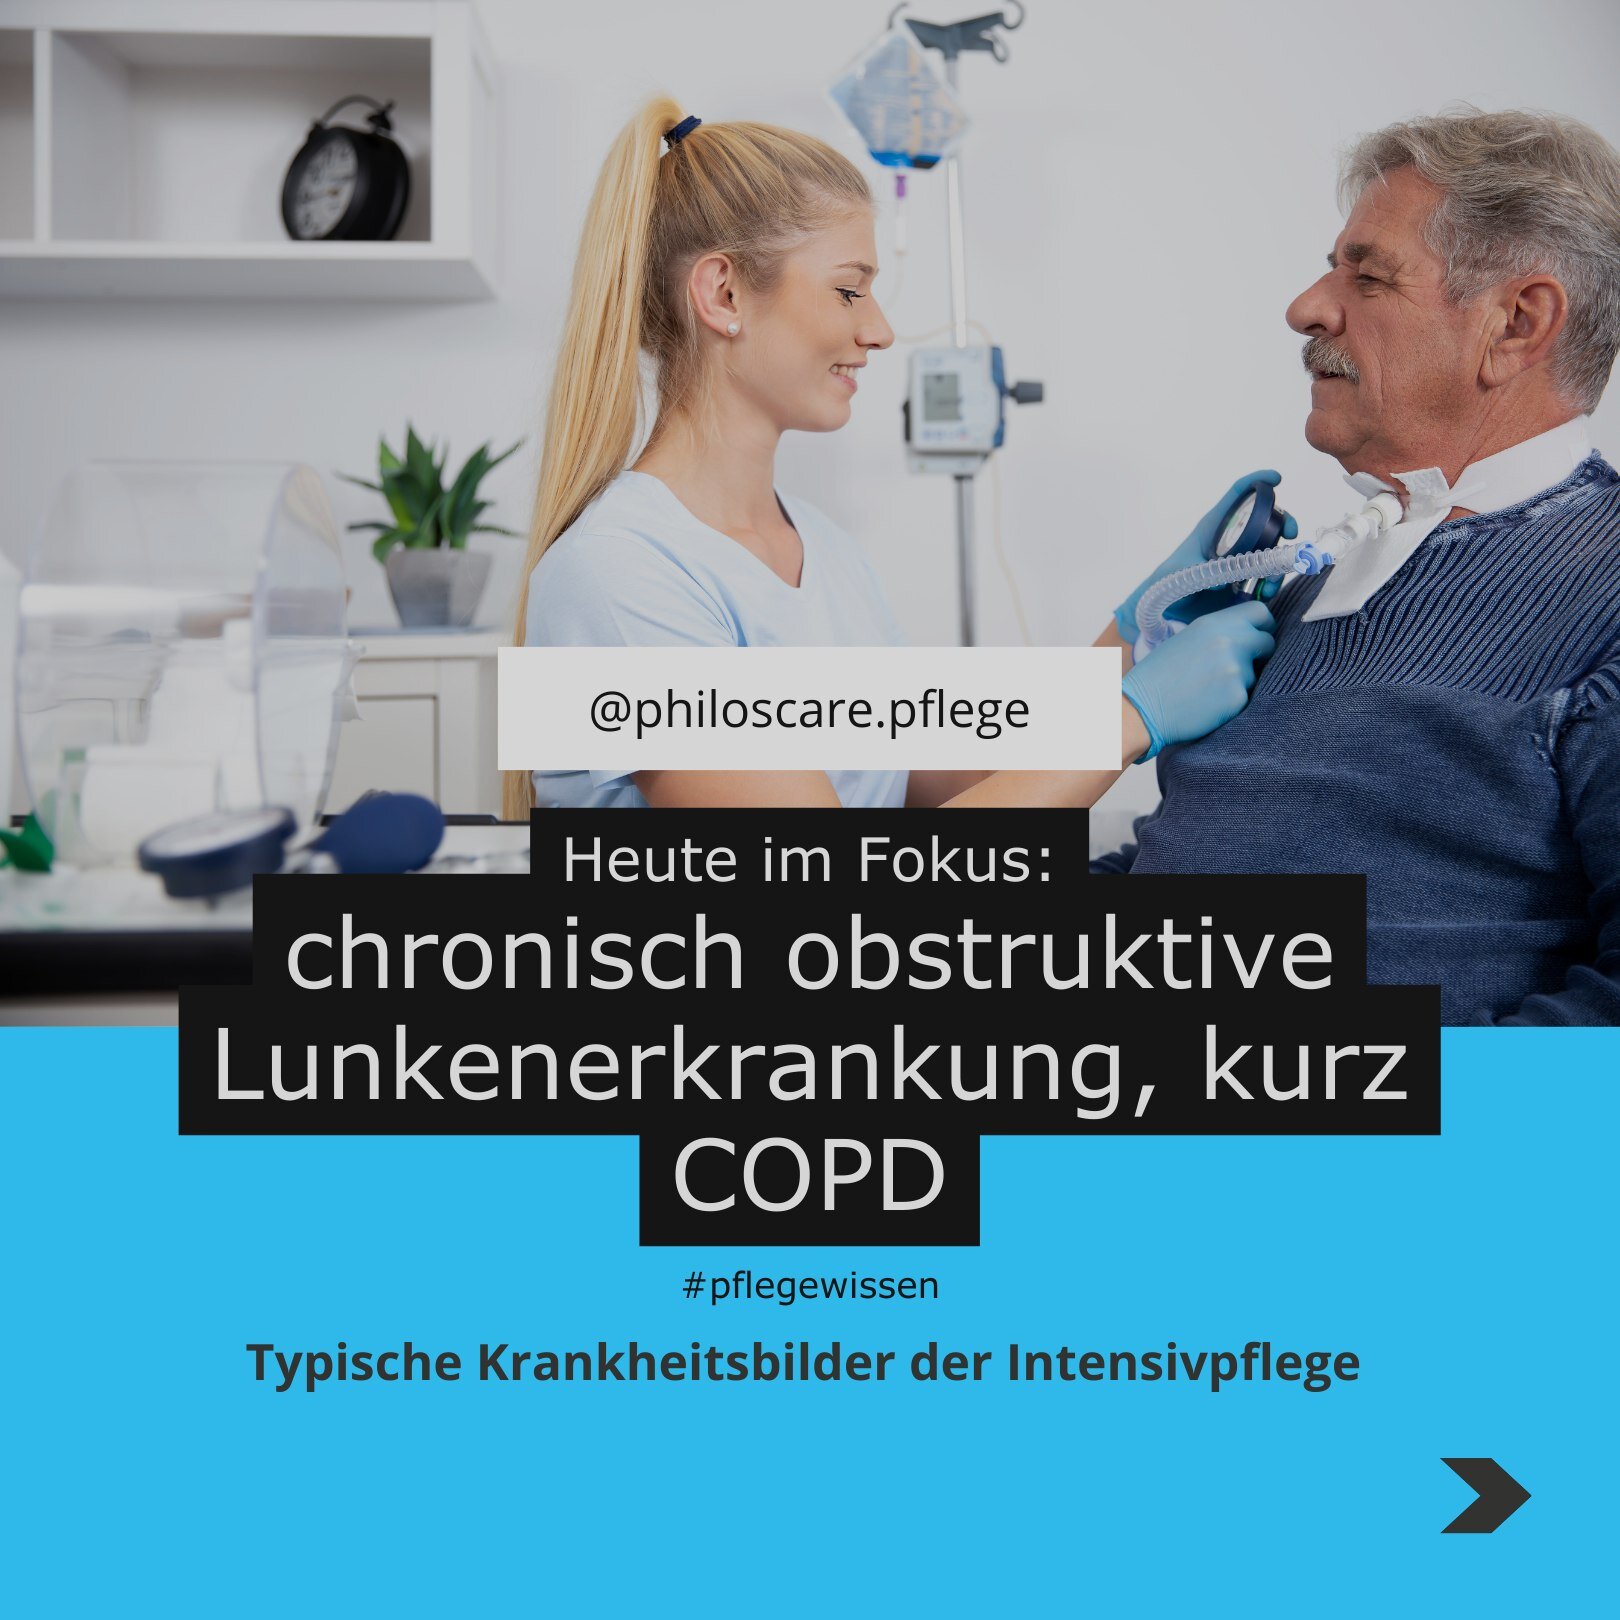 🫁 COPD im Fokus 🫁

In unserer zweiten Ausgabe von #pflegewissen widmen wir uns dem Thema COPD - eine Lungenerkrankung, die das Atmen erschwert und das t&auml;gliche Leben beeintr&auml;chtigen kann. Bei PhilosCare verstehen wir die Herausforderungen